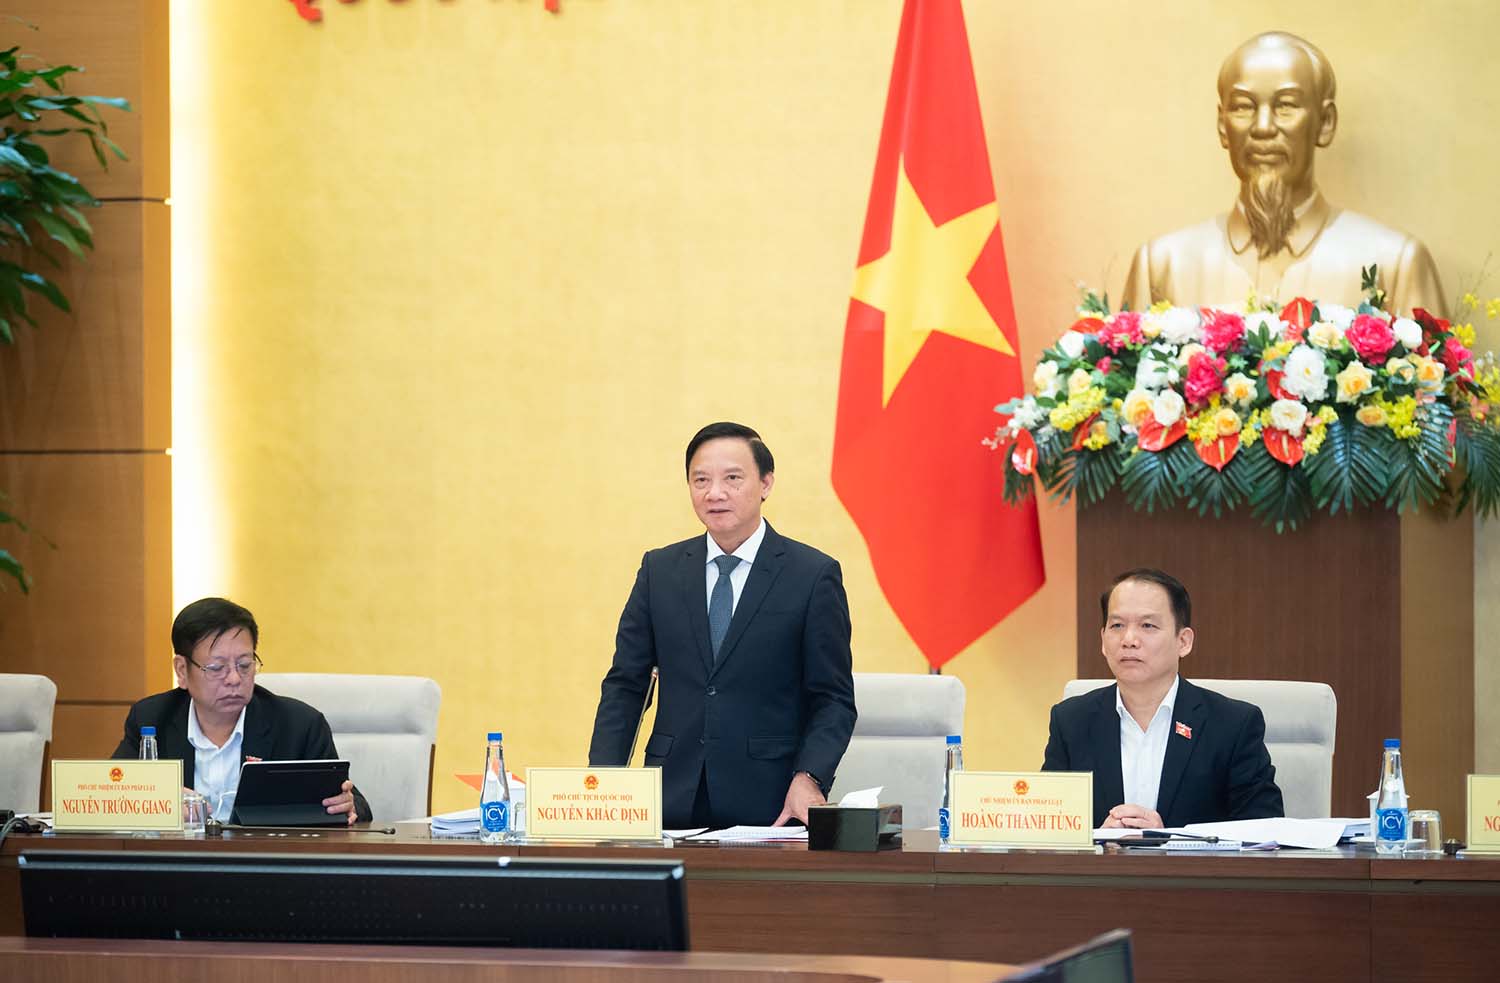 Phó Chủ tịch Quốc hội Nguyễn Khắc Định phát biểu tại phiên họp. Ảnh: VPQH